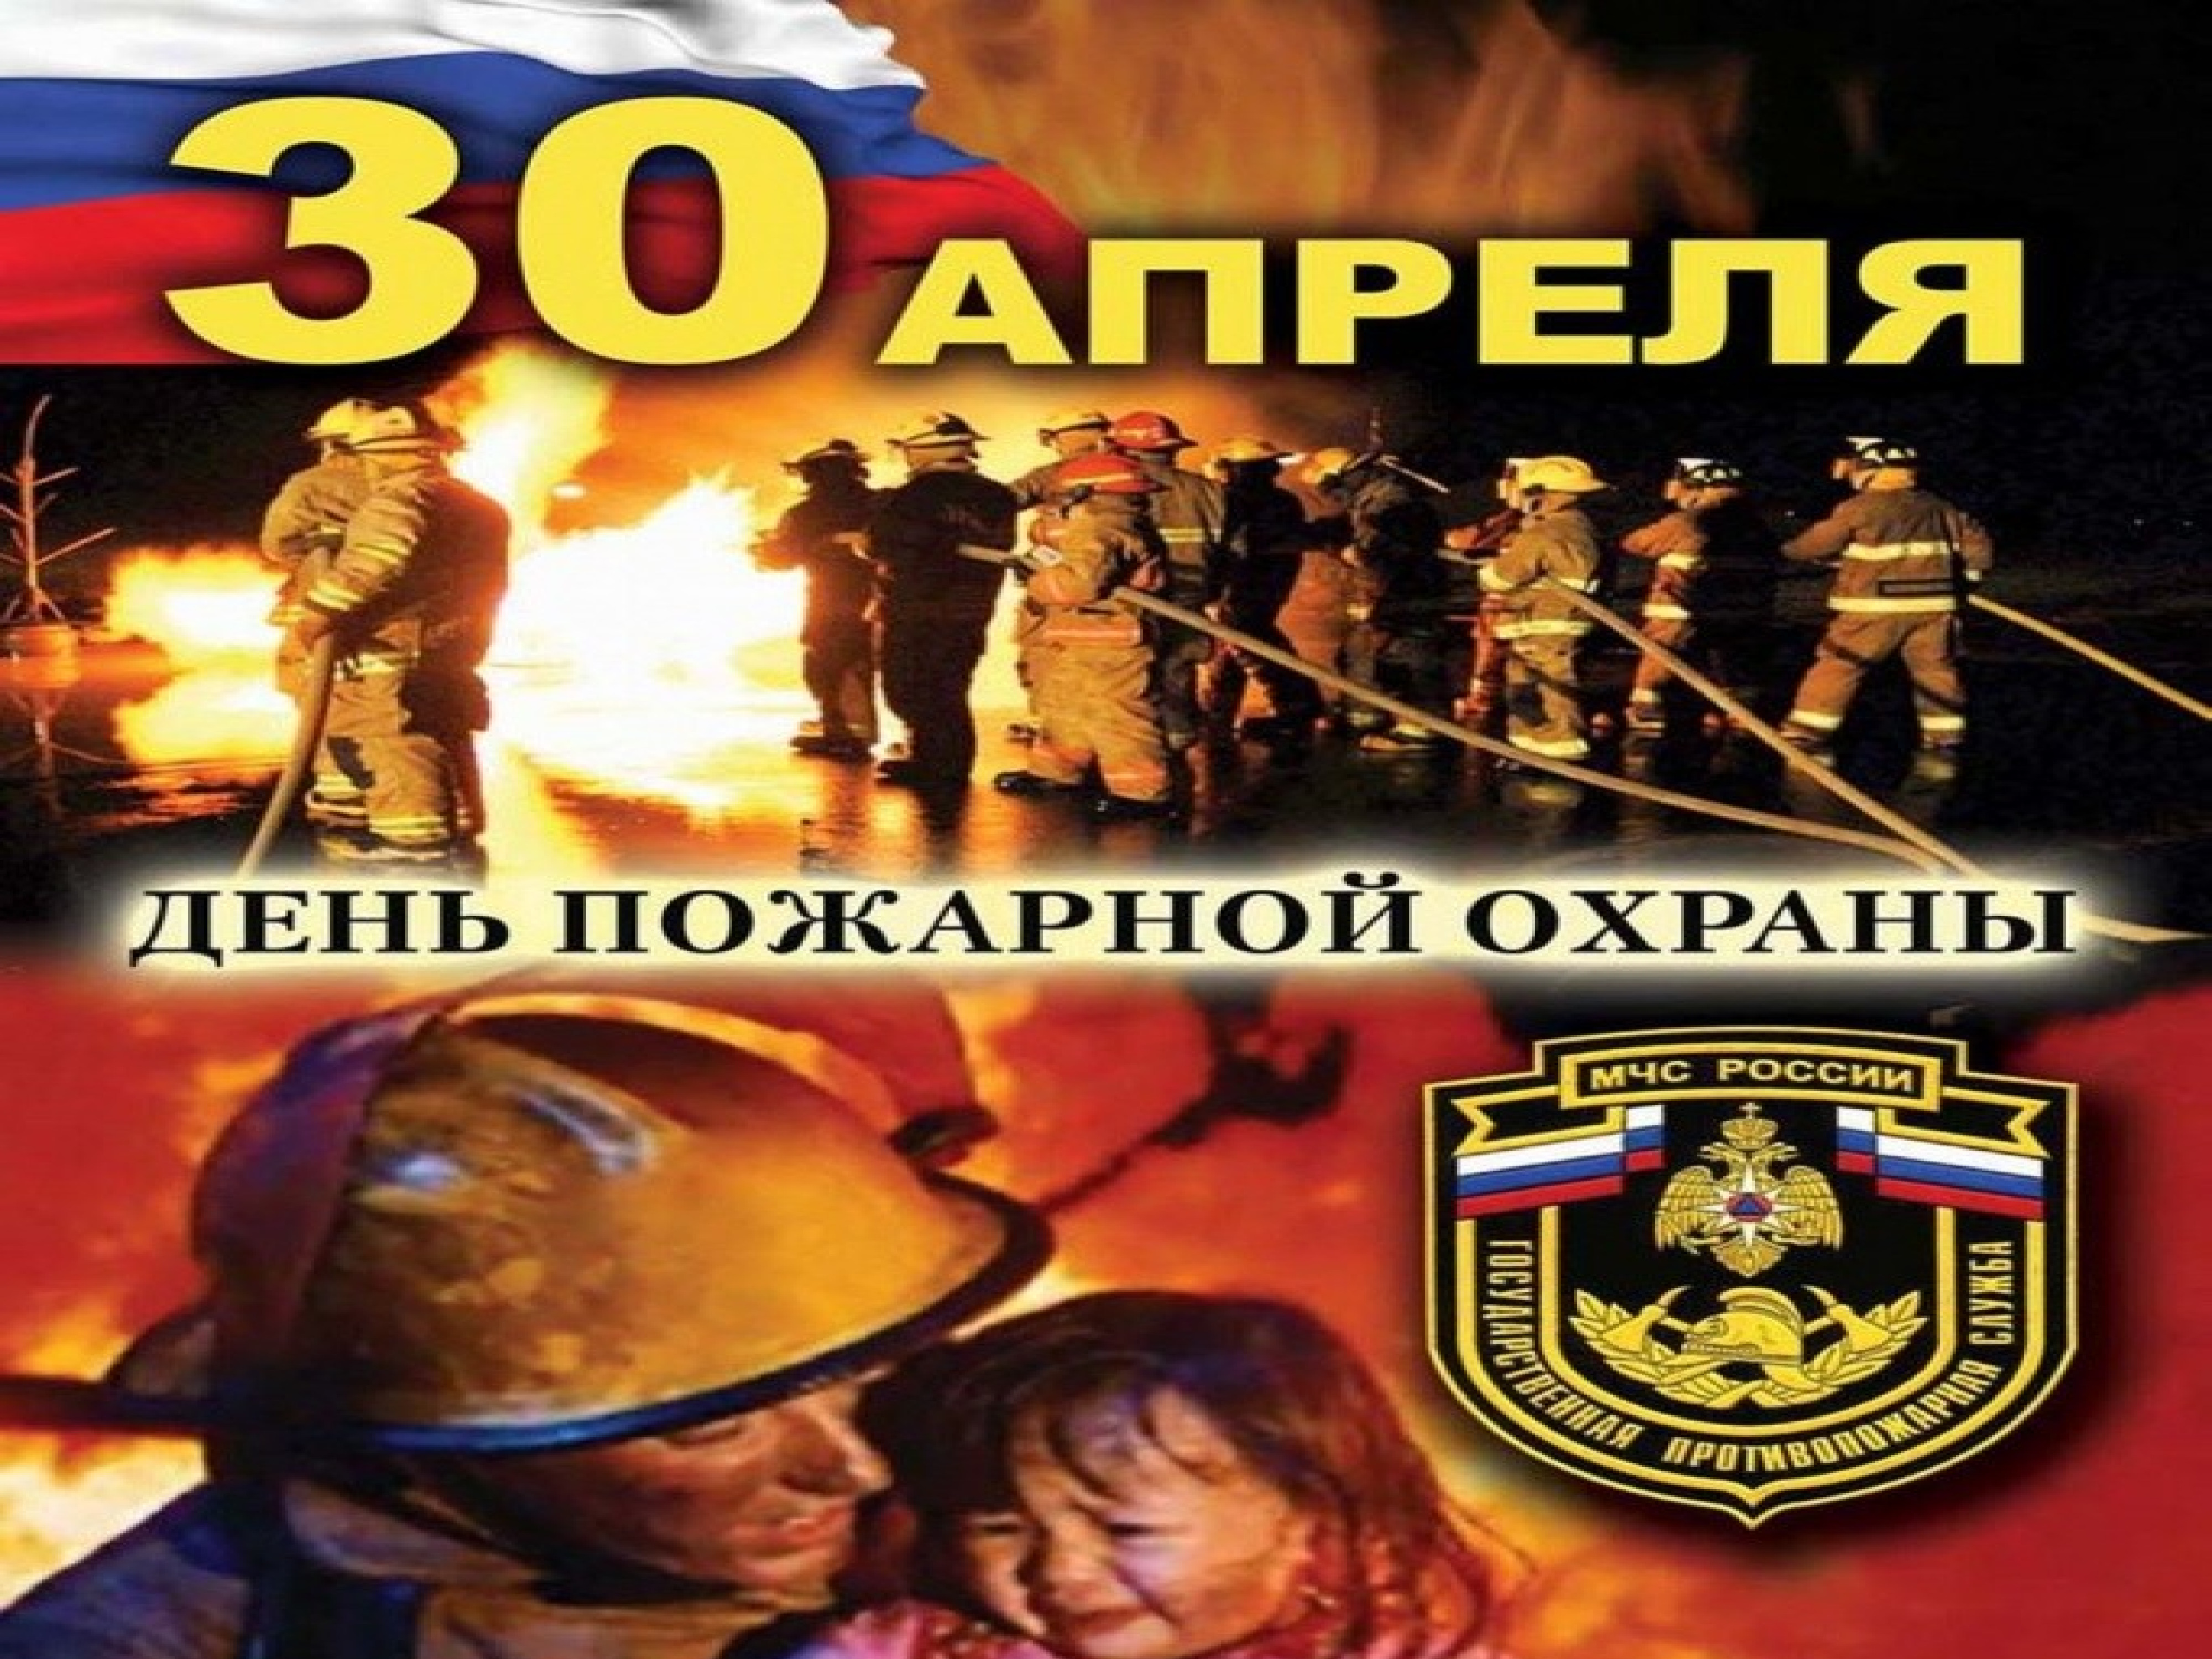 День пожарной охраны дата